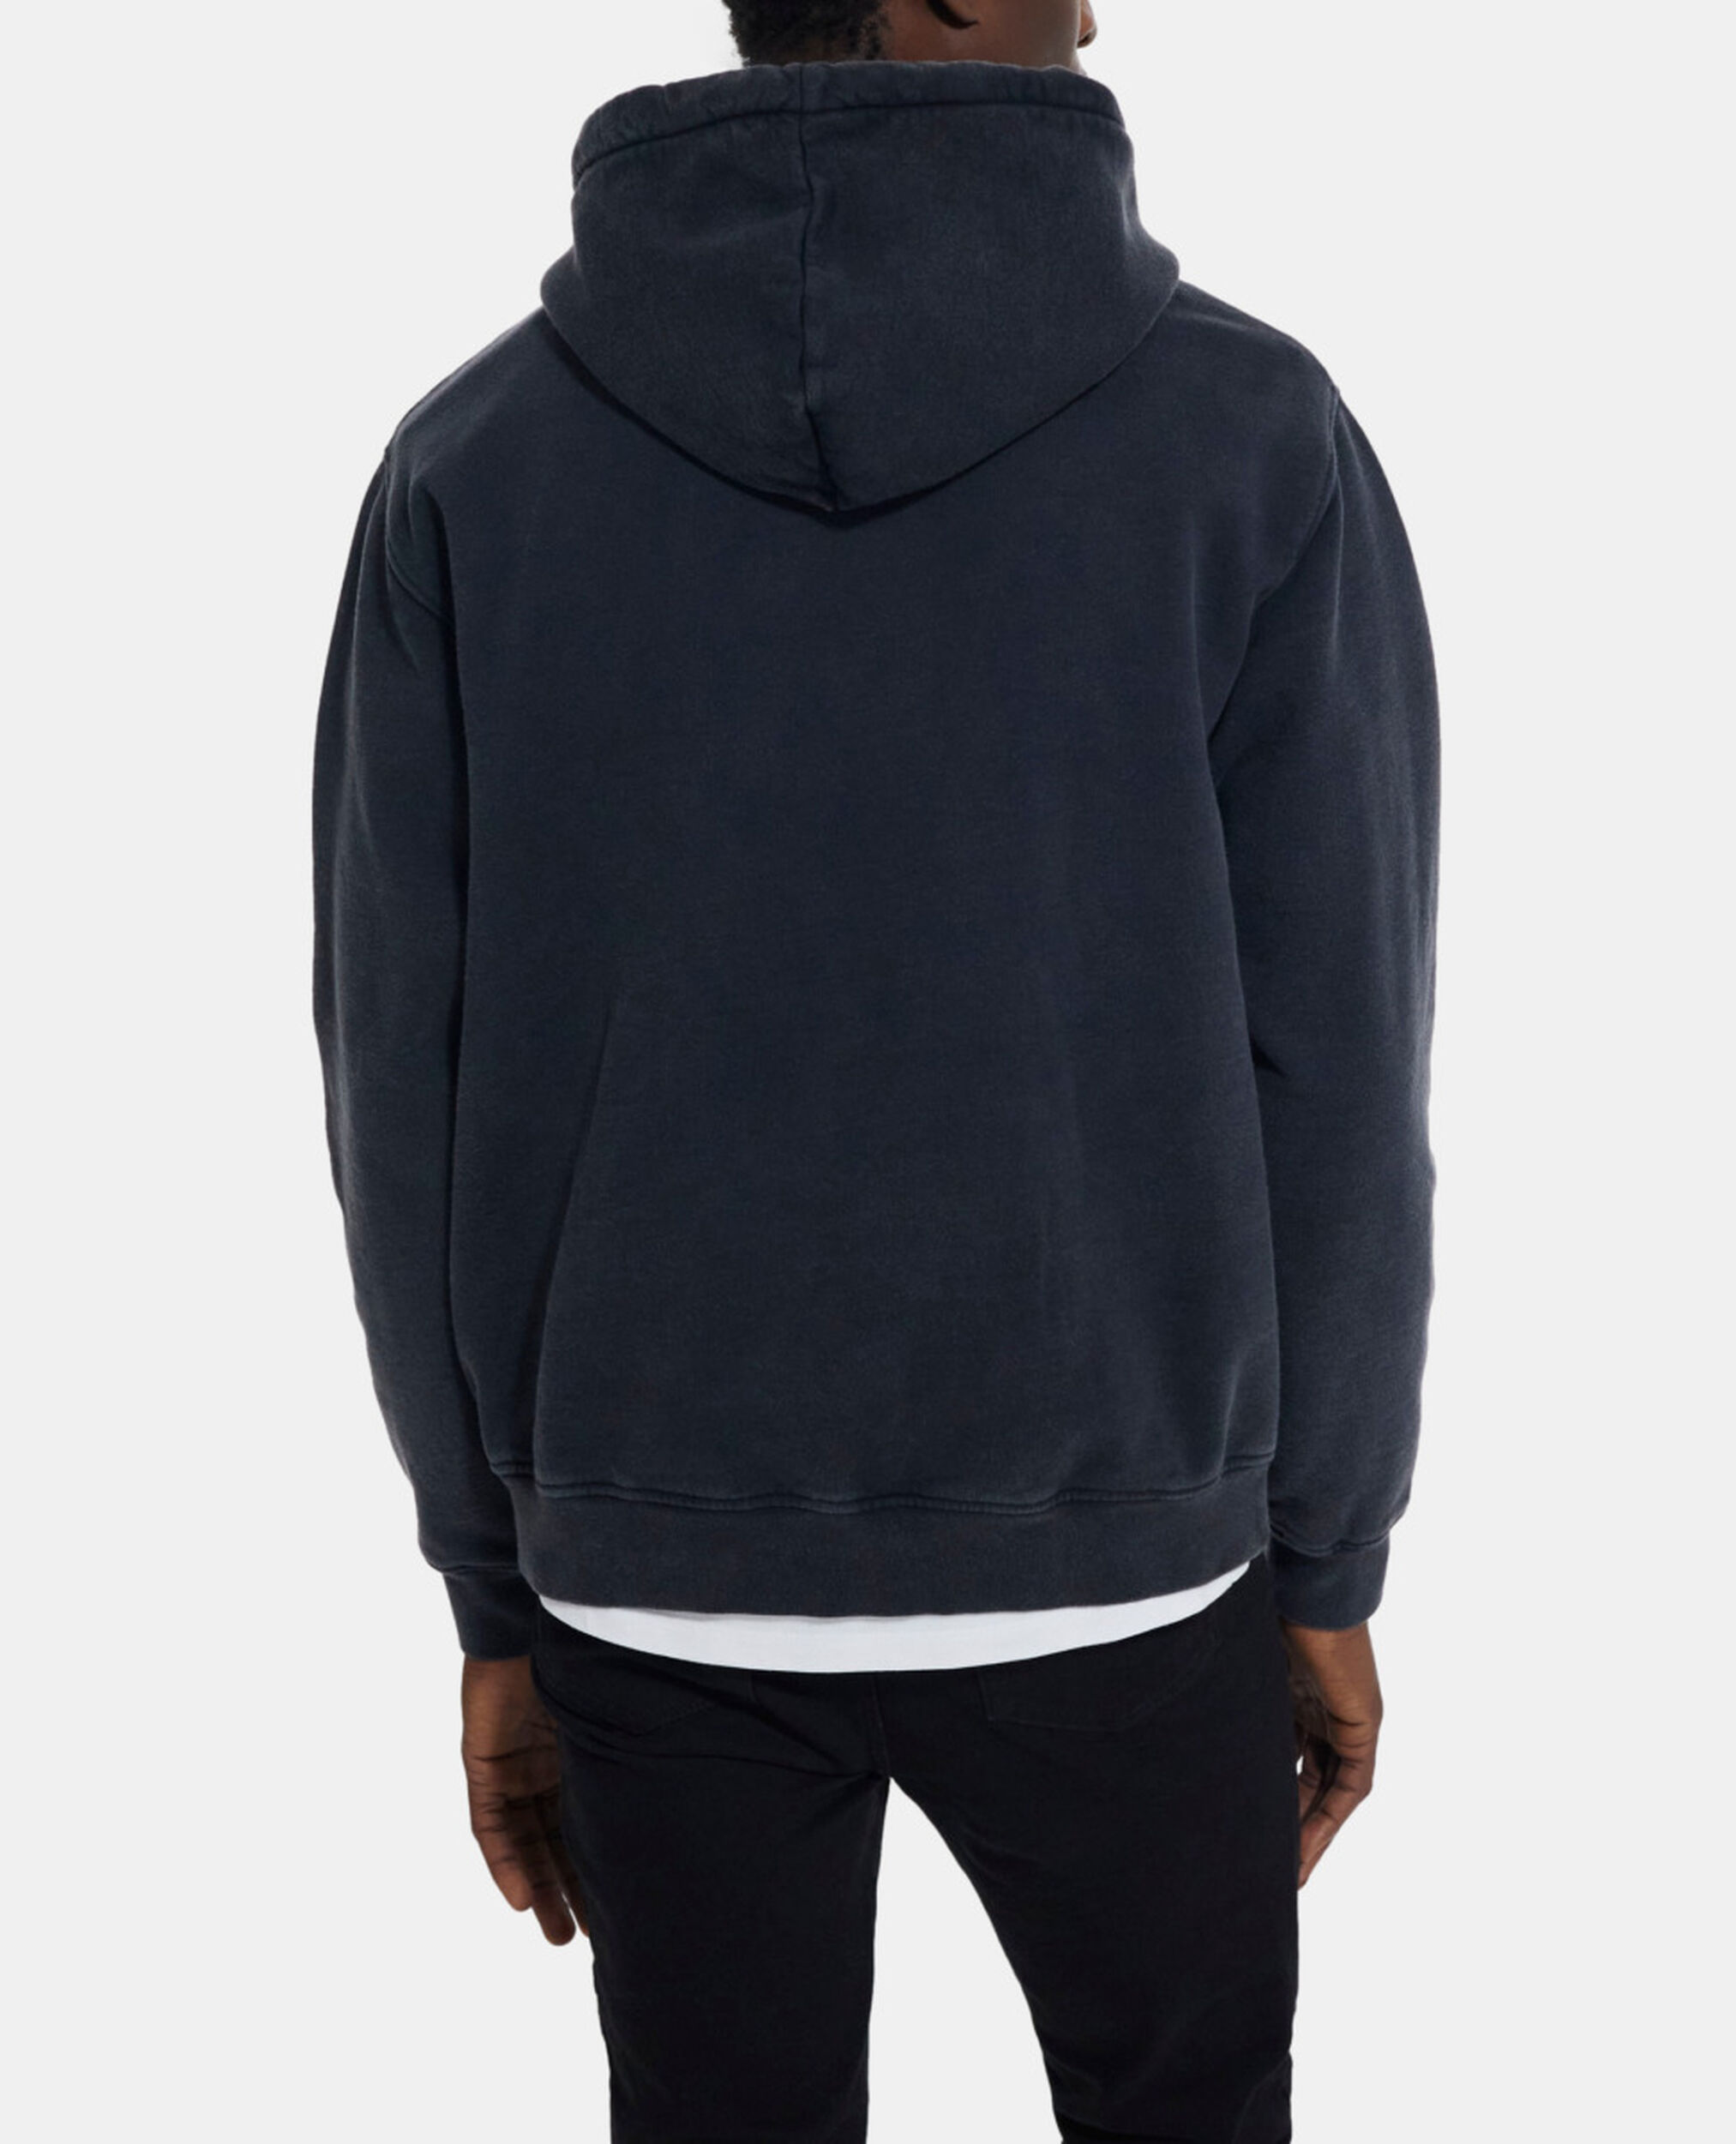 Black sweatshirt, BLACK WASHED, hi-res image number null